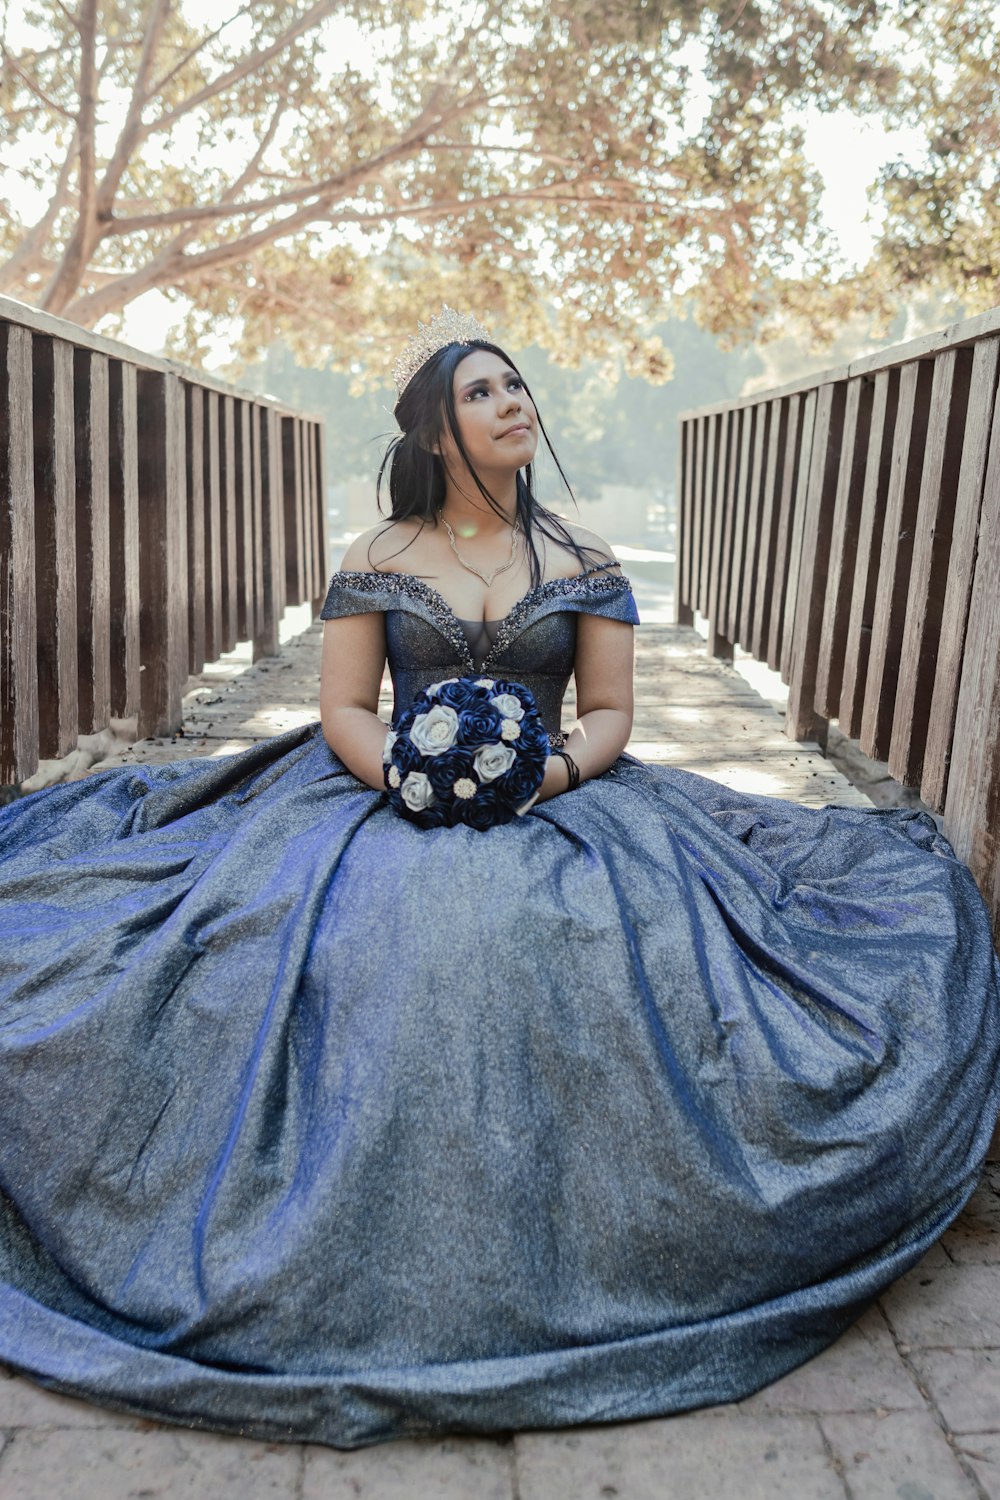 una mujer con un vestido azul sentada en un banco de madera